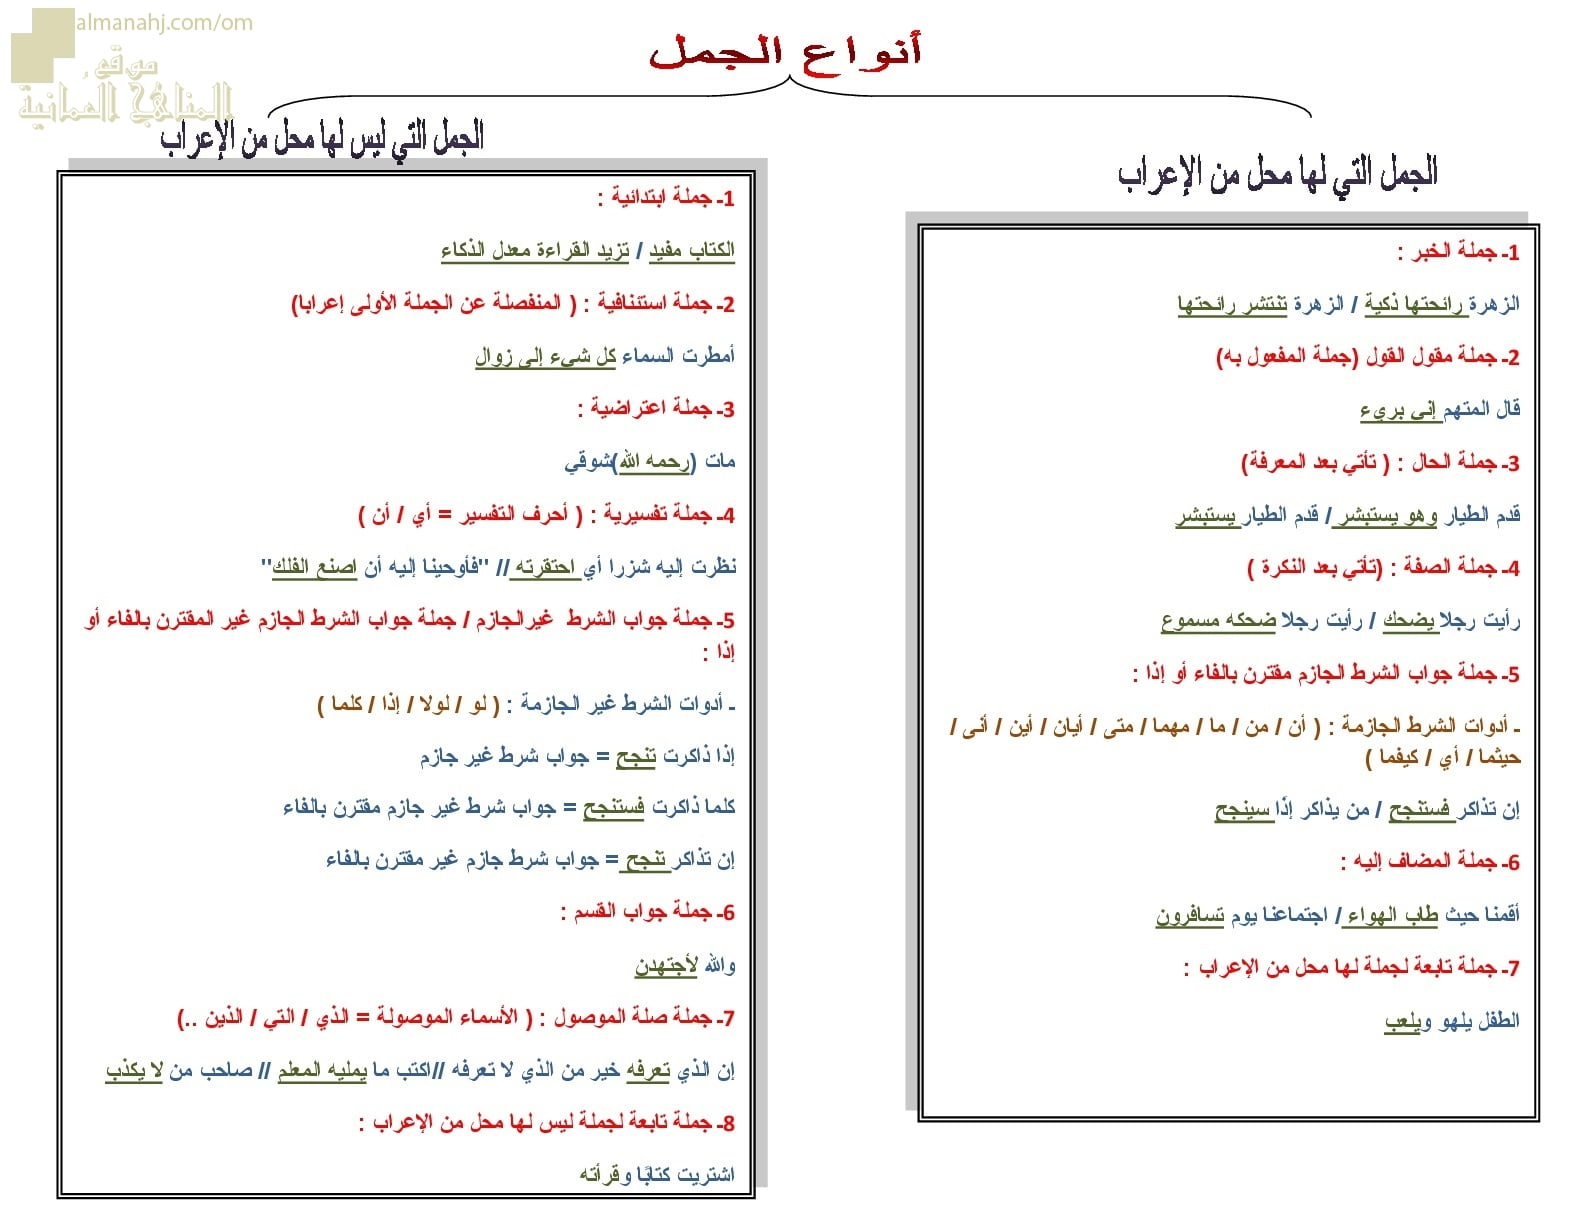 ورقة عمل وملخص لدرس الجمل التي لها محل وليس لها محل من الإعراب (لغة عربية) الحادي عشر